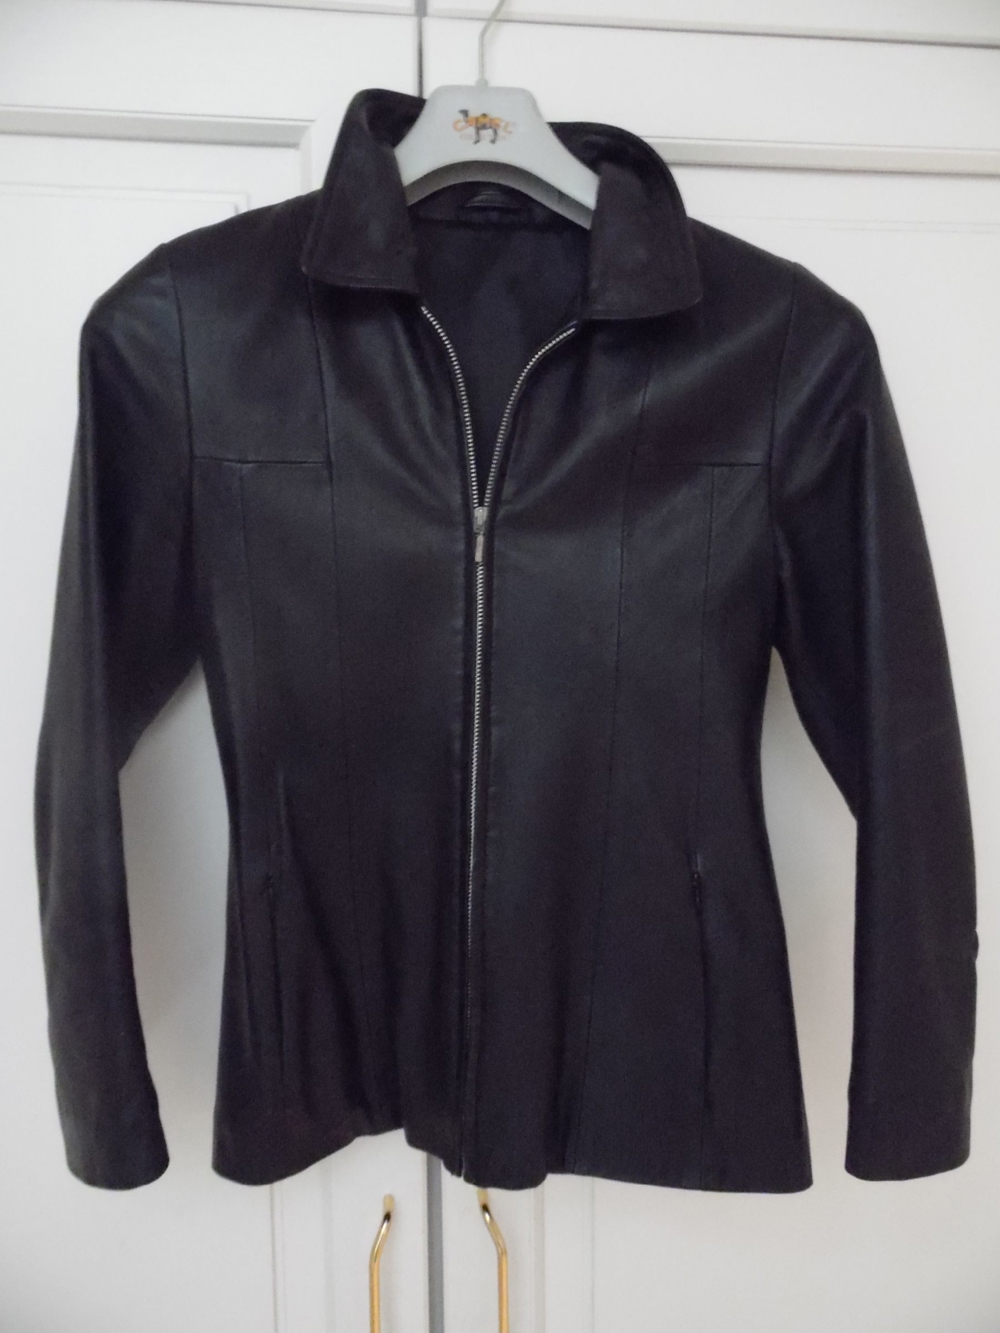 Damen Lederjacke Jacke schwarz Gr. S Gr. 36 w Neu